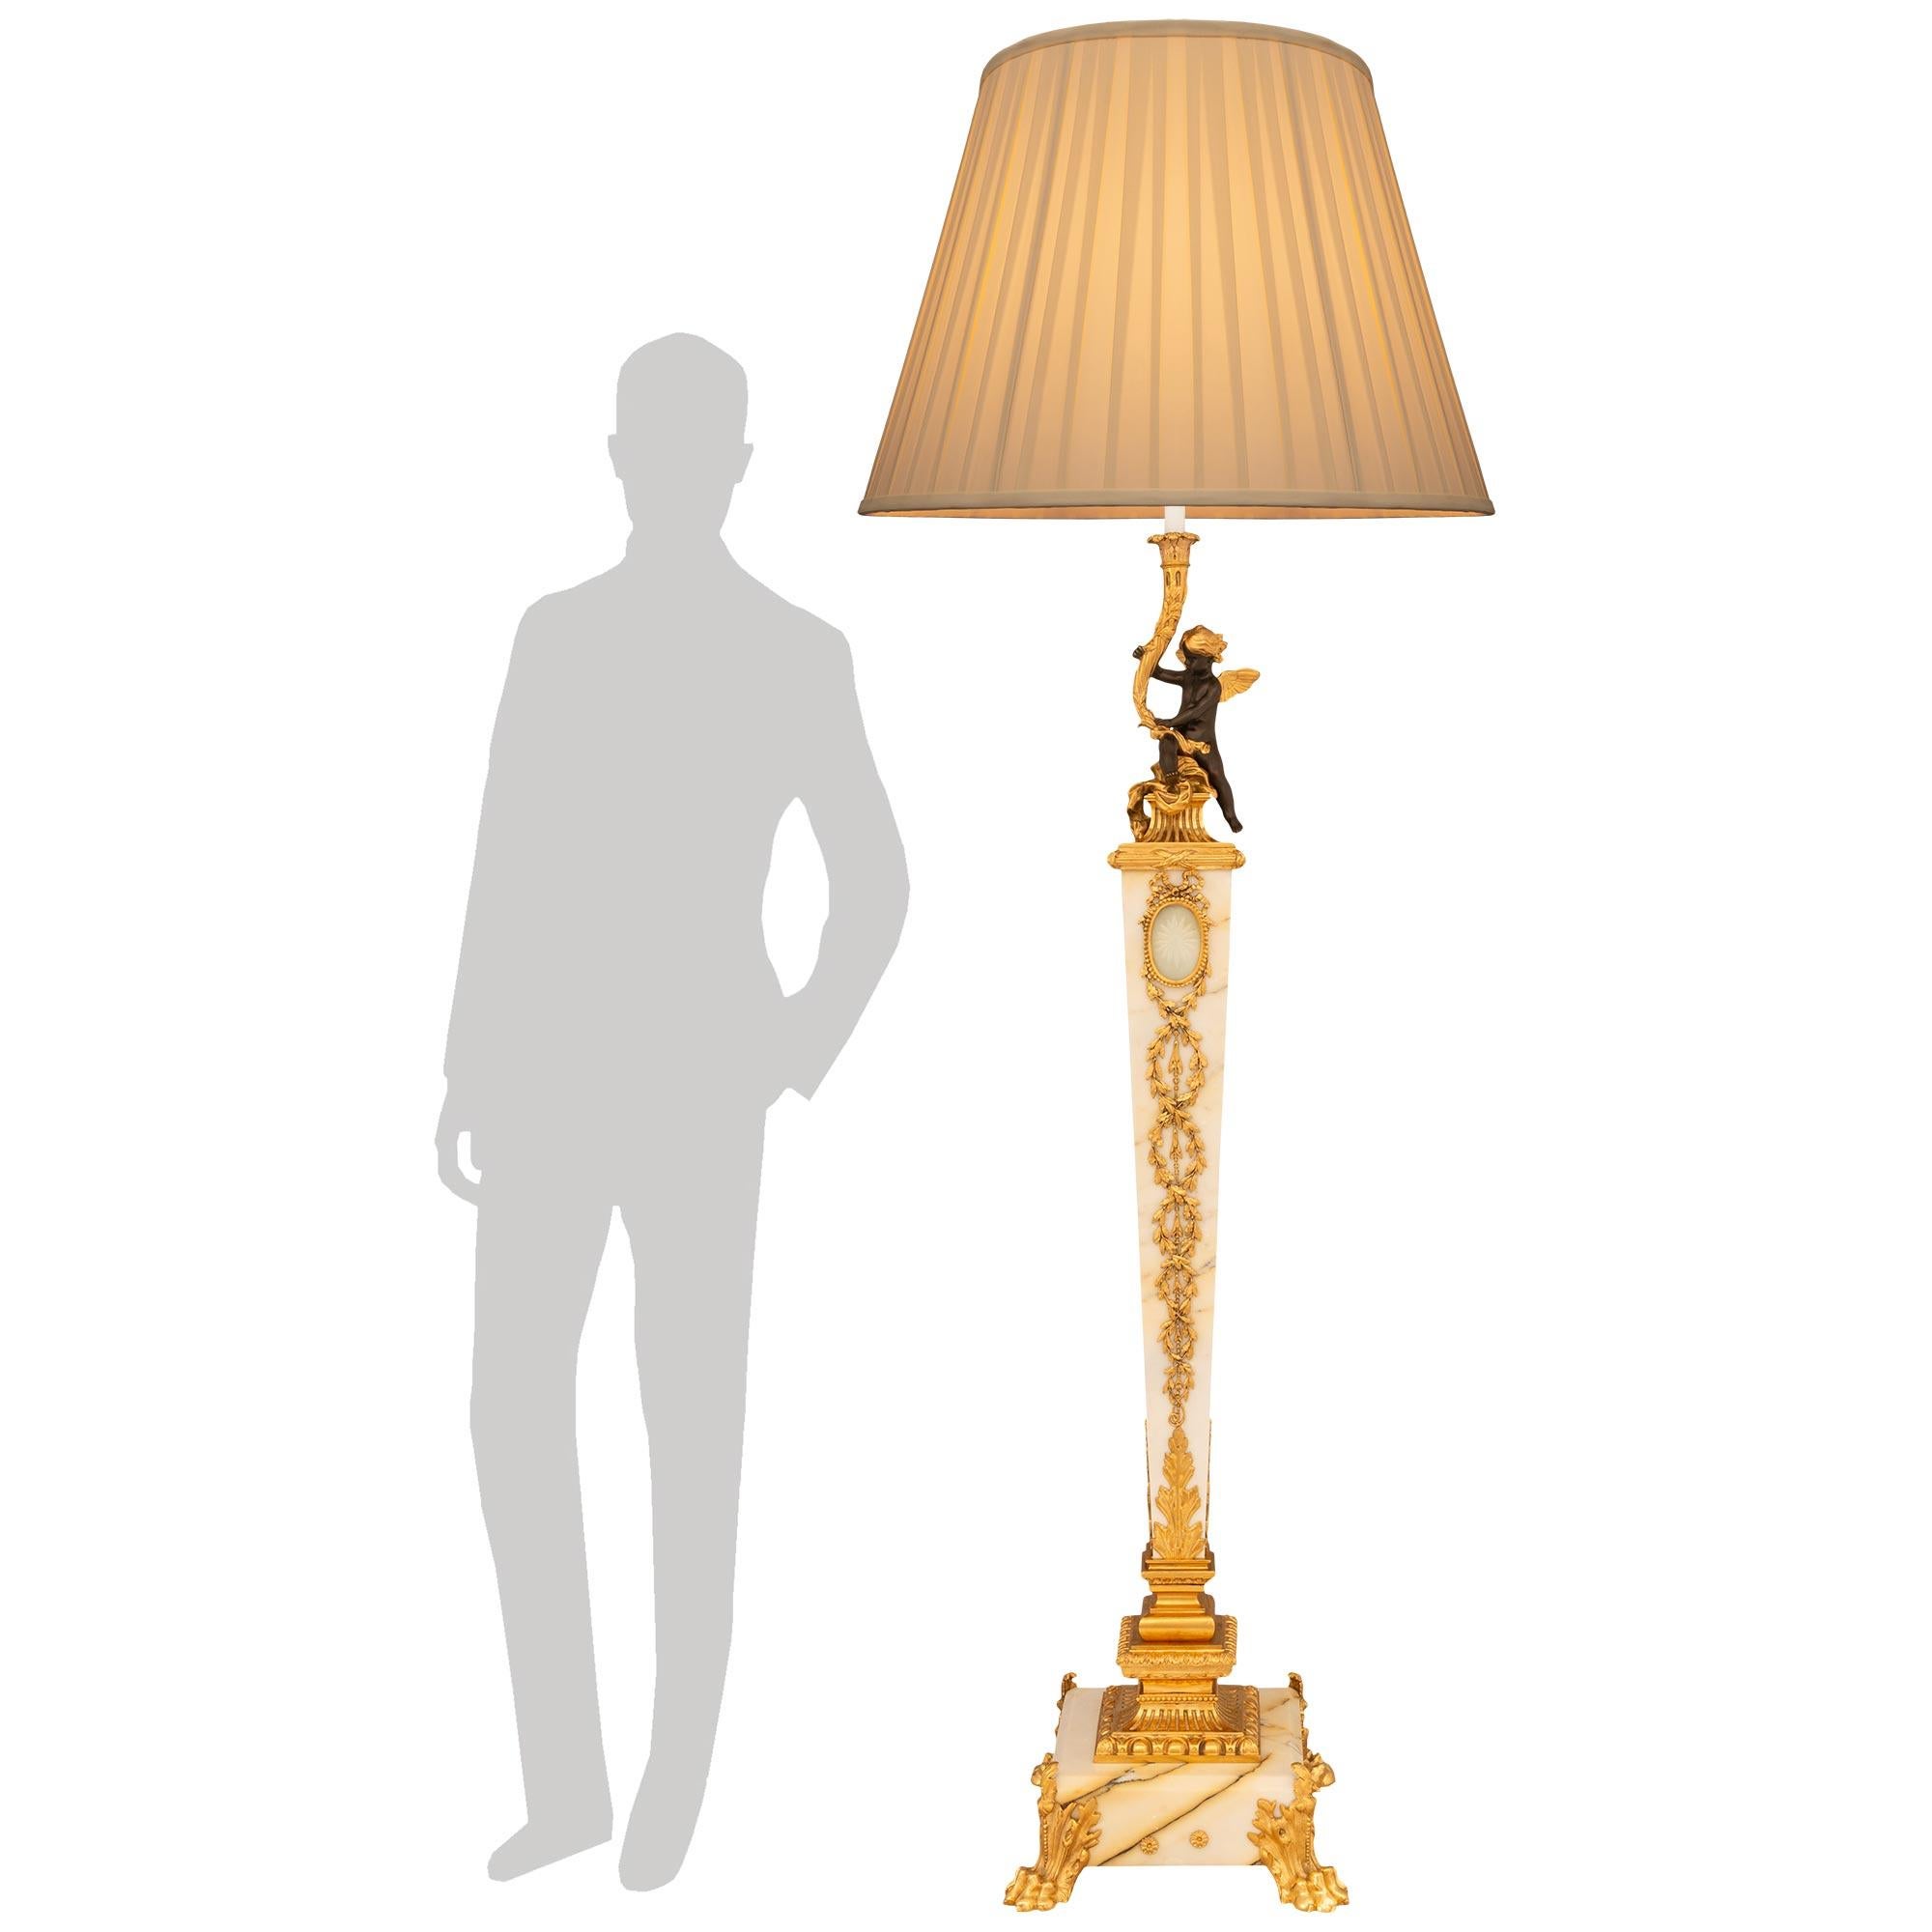 Très élégant lampadaire Torchière en bronze patiné, bronze doré, cristal gravé et marbre Giallo Antico de style Louis XVI du XIXe siècle. Le lampadaire repose sur une base carrée en marbre Giallo Antico, avec quatre pieds en patte d'oie en bronze